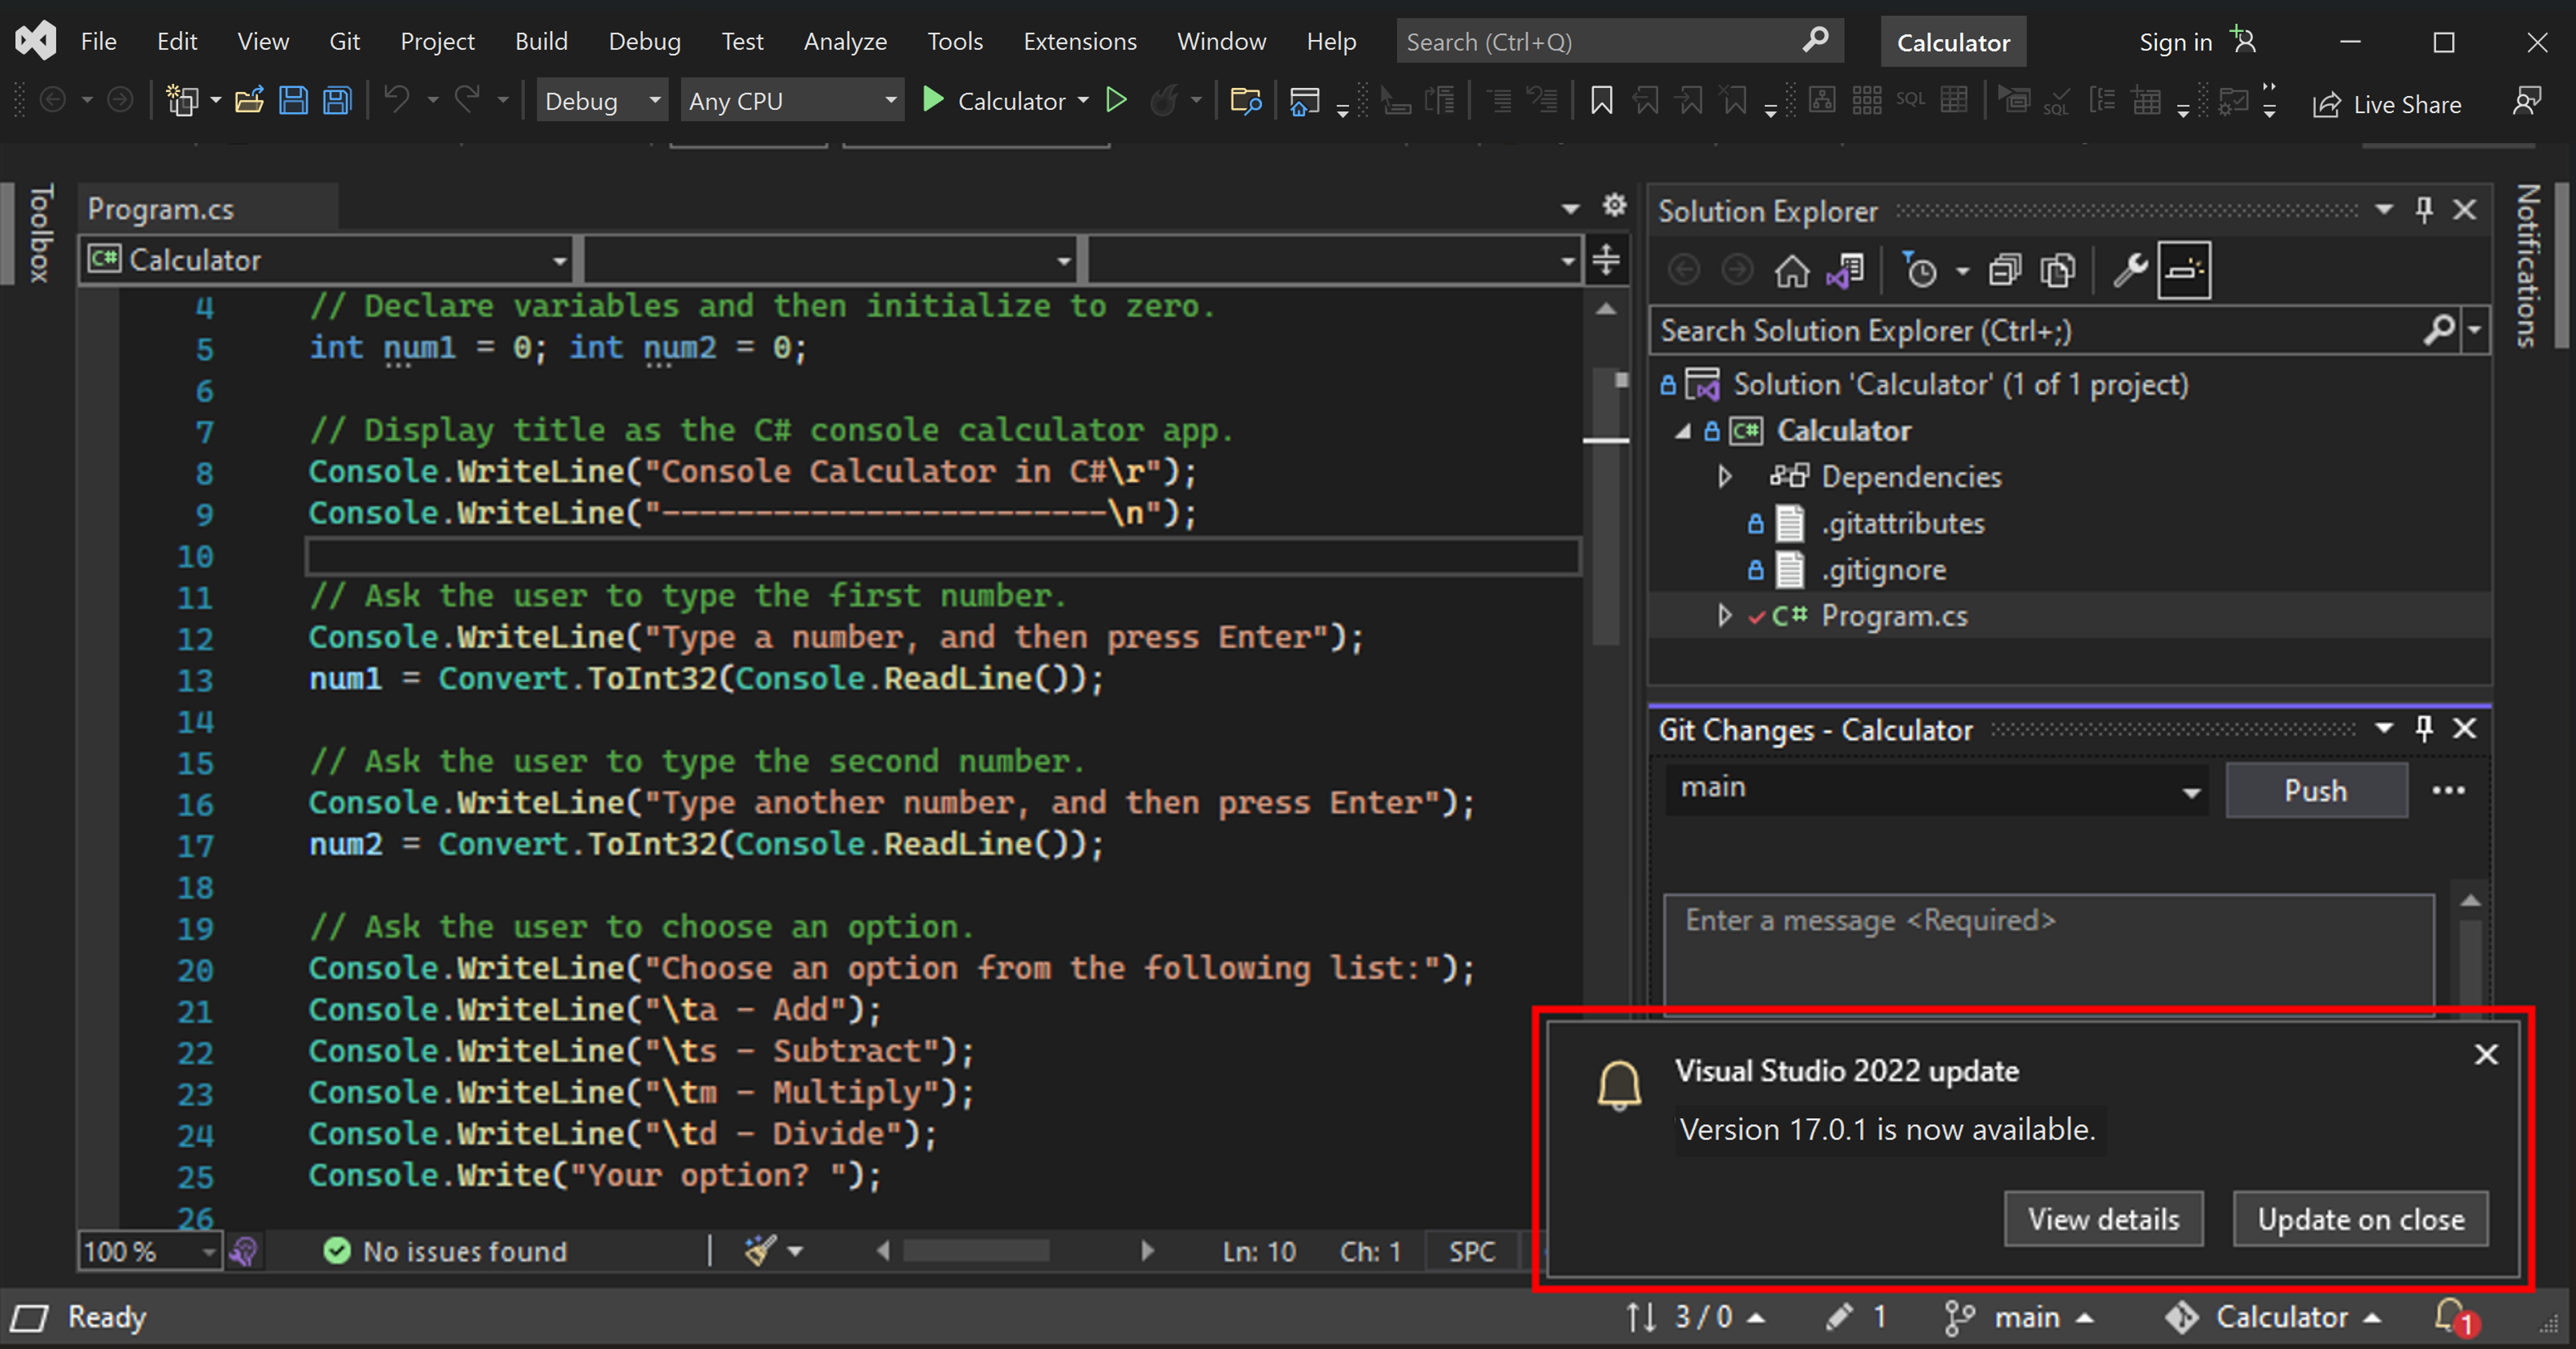 Screenshot: Updatemeldung für Visual Studio 2022 in der unteren rechten Ecke der Visual Studio IDE.